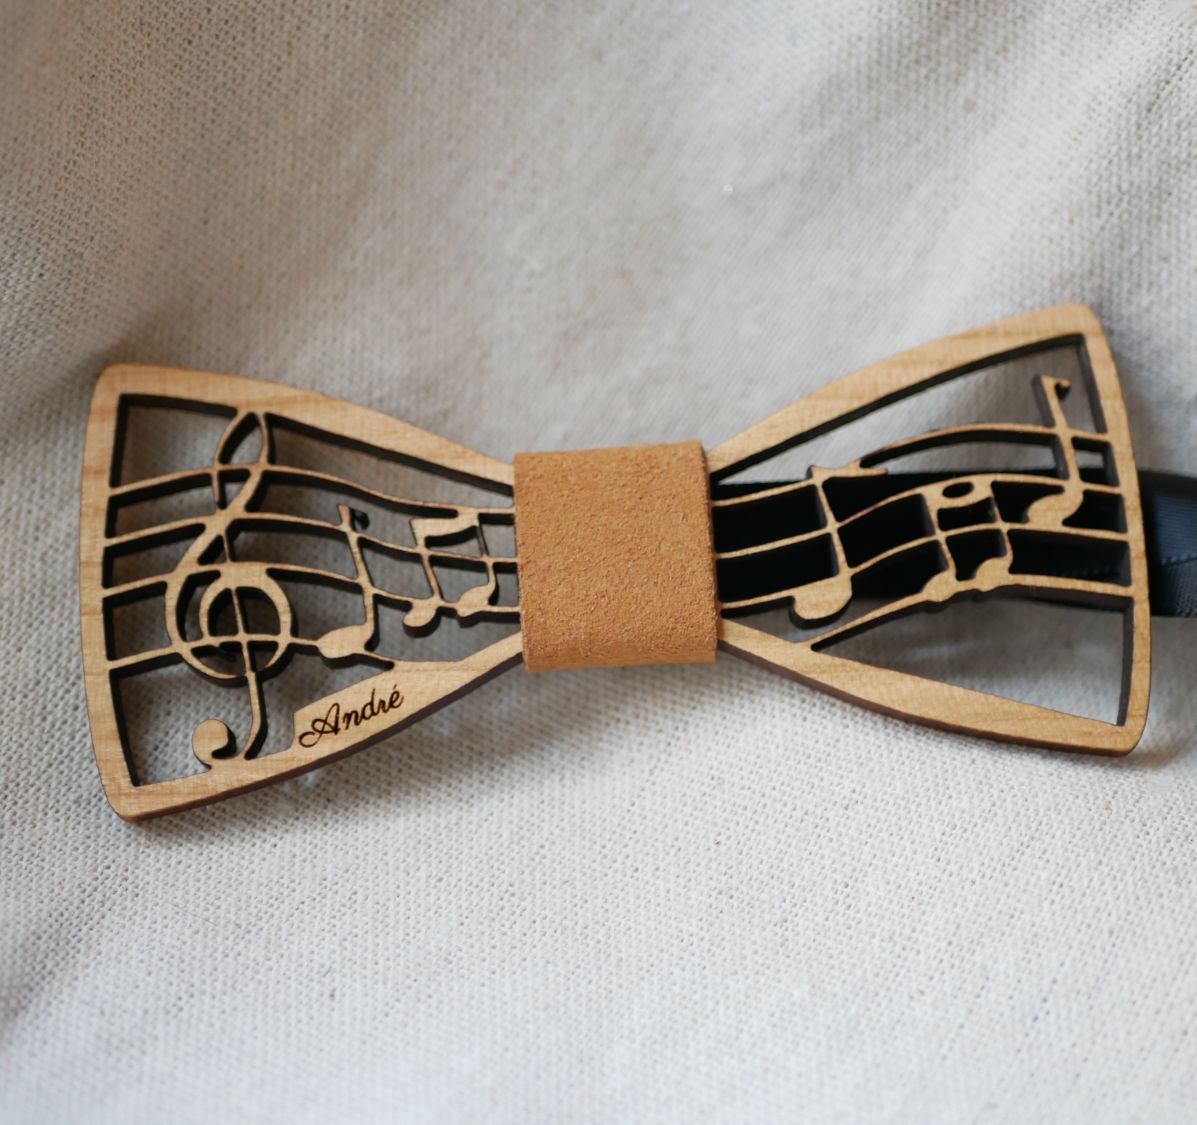 Pajarita de madera con tema musical, partitura y clave de sol, personalizable